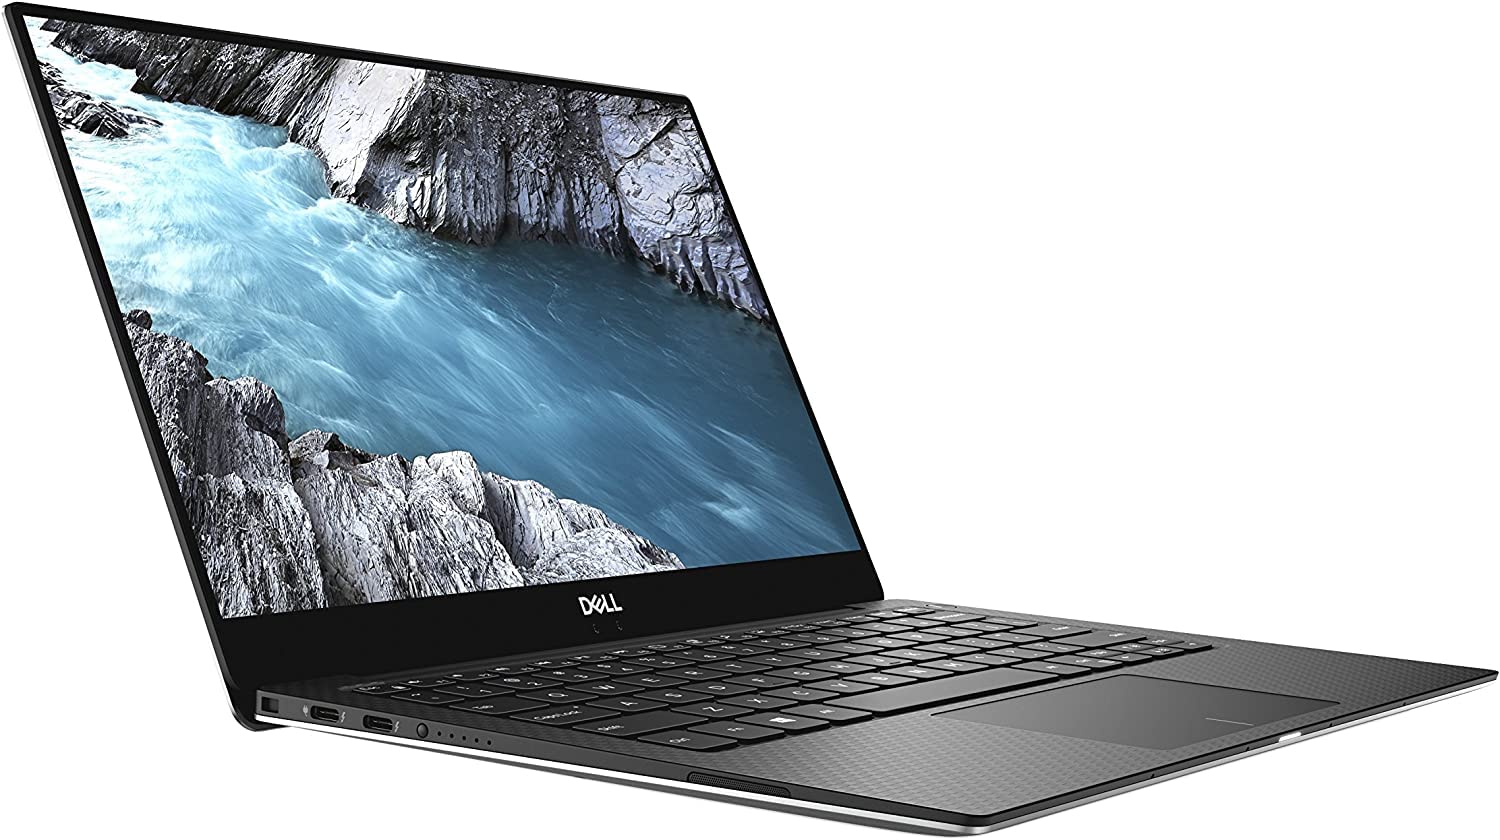 Dell XPS 13 9370 Laptop: Core i7-8550U, 8GB RAM, 256GB SSD, 13.3